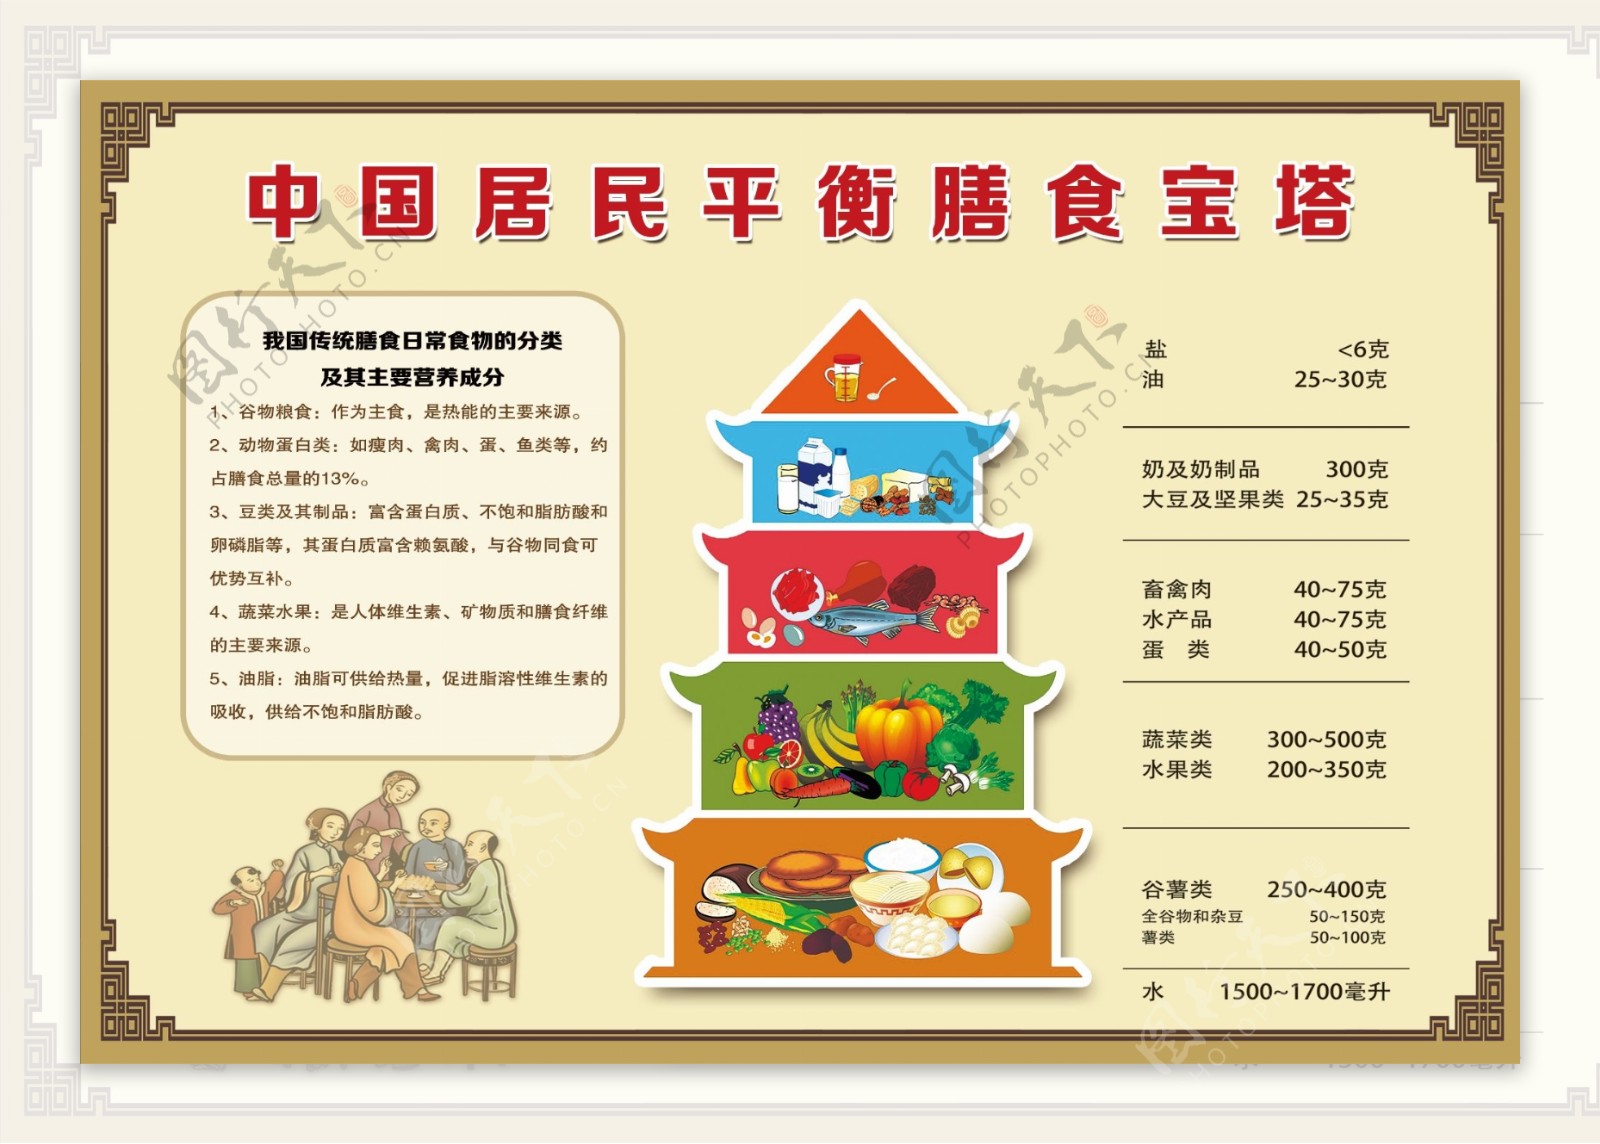 中国居民平衡膳食宝塔图片